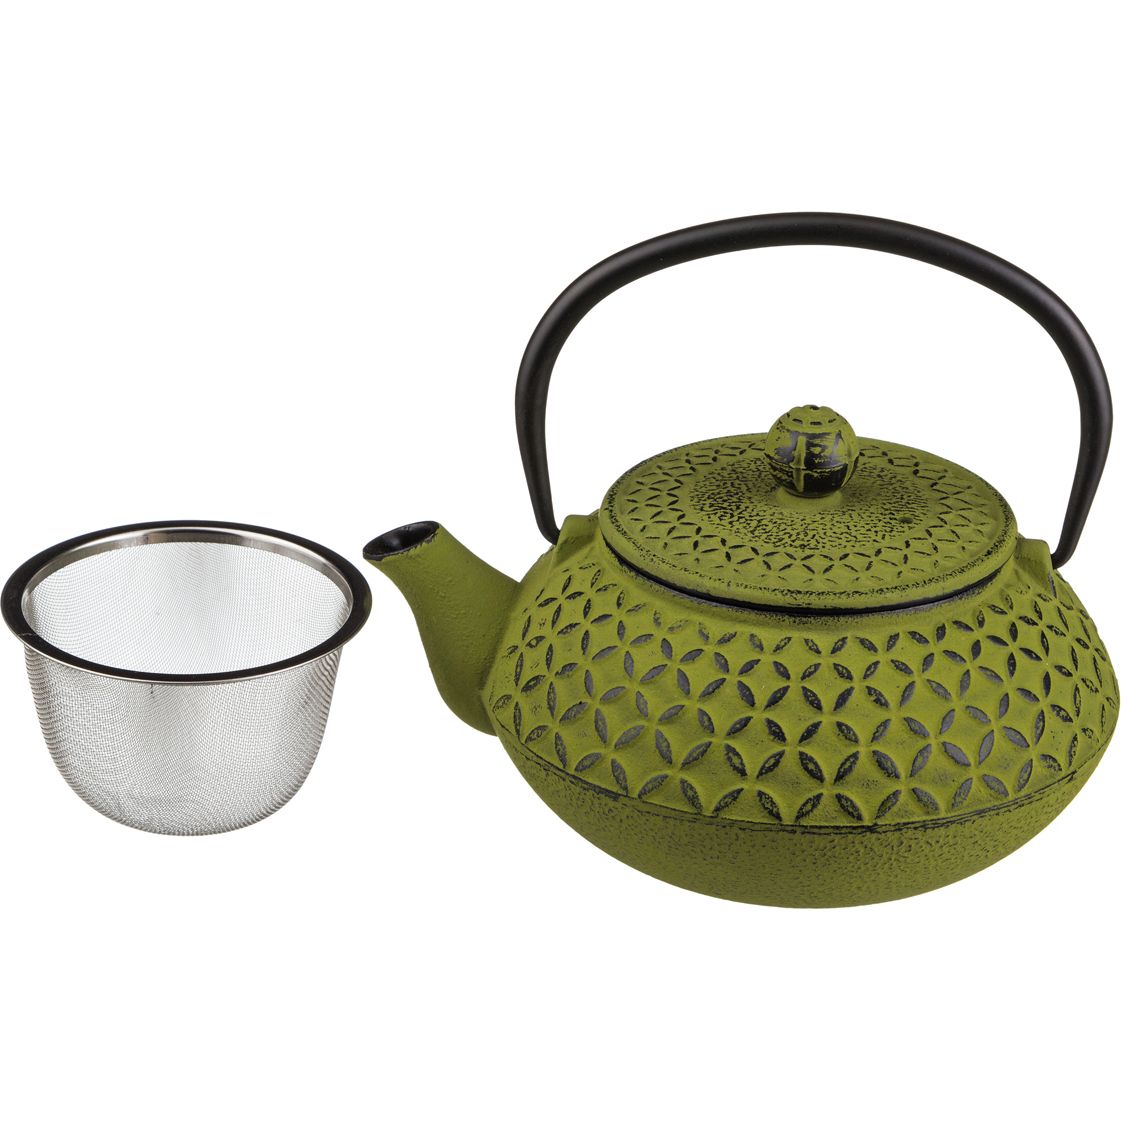 Заварочный чайник Holly (700 мл), размер 700 мл, цвет зеленый lfr380161 Заварочный чайник Holly (700 мл) - фото 1